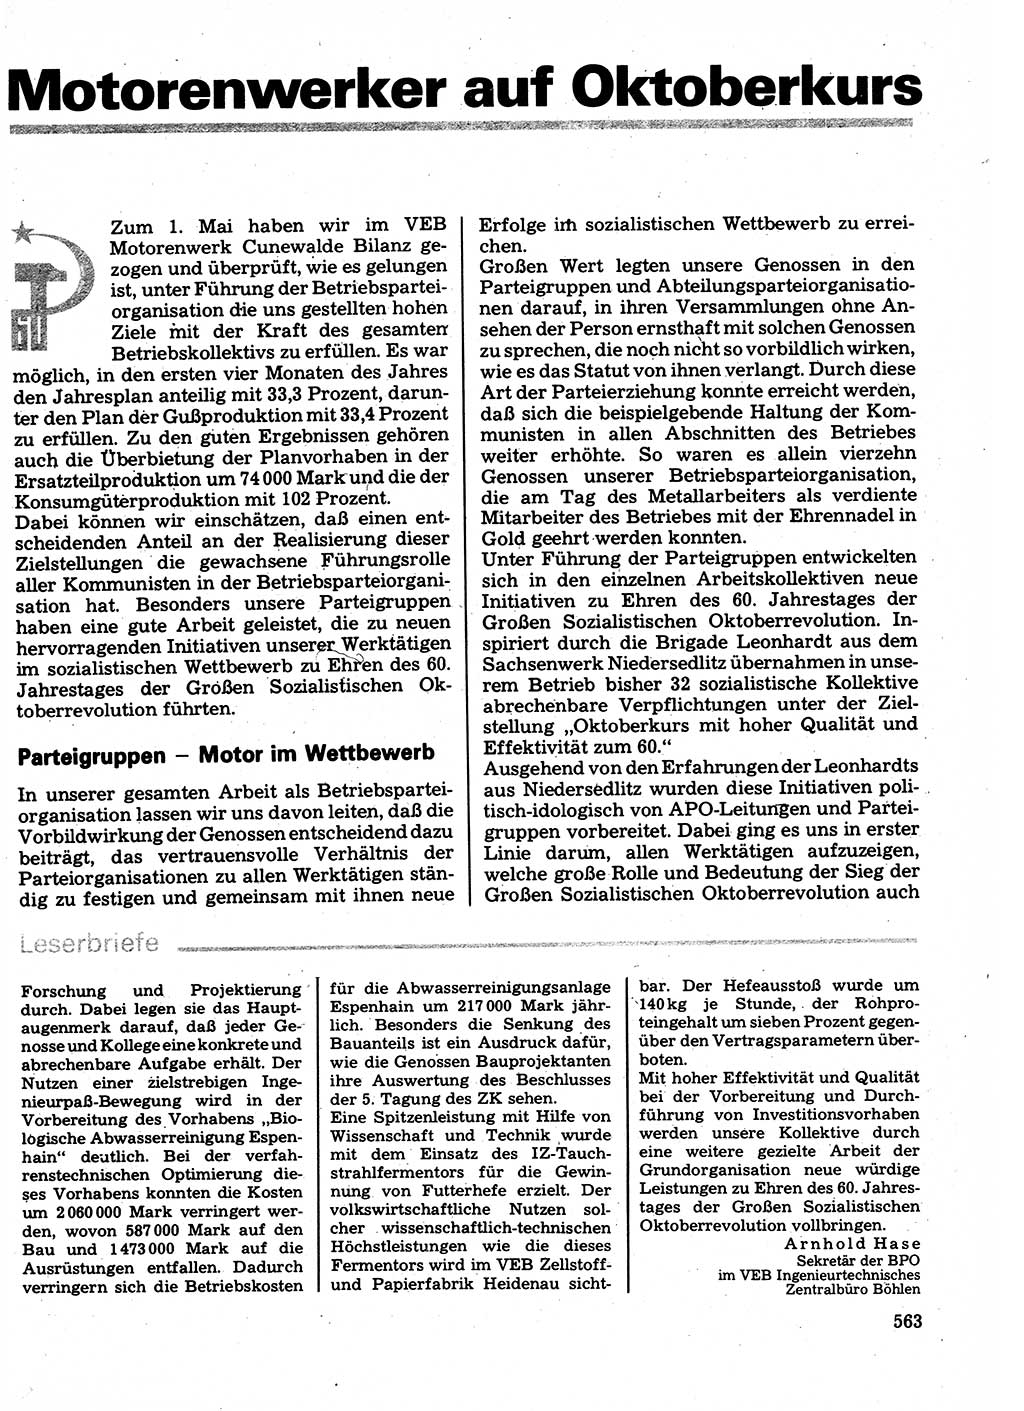 Neuer Weg (NW), Organ des Zentralkomitees (ZK) der SED (Sozialistische Einheitspartei Deutschlands) für Fragen des Parteilebens, 32. Jahrgang [Deutsche Demokratische Republik (DDR)] 1977, Seite 563 (NW ZK SED DDR 1977, S. 563)